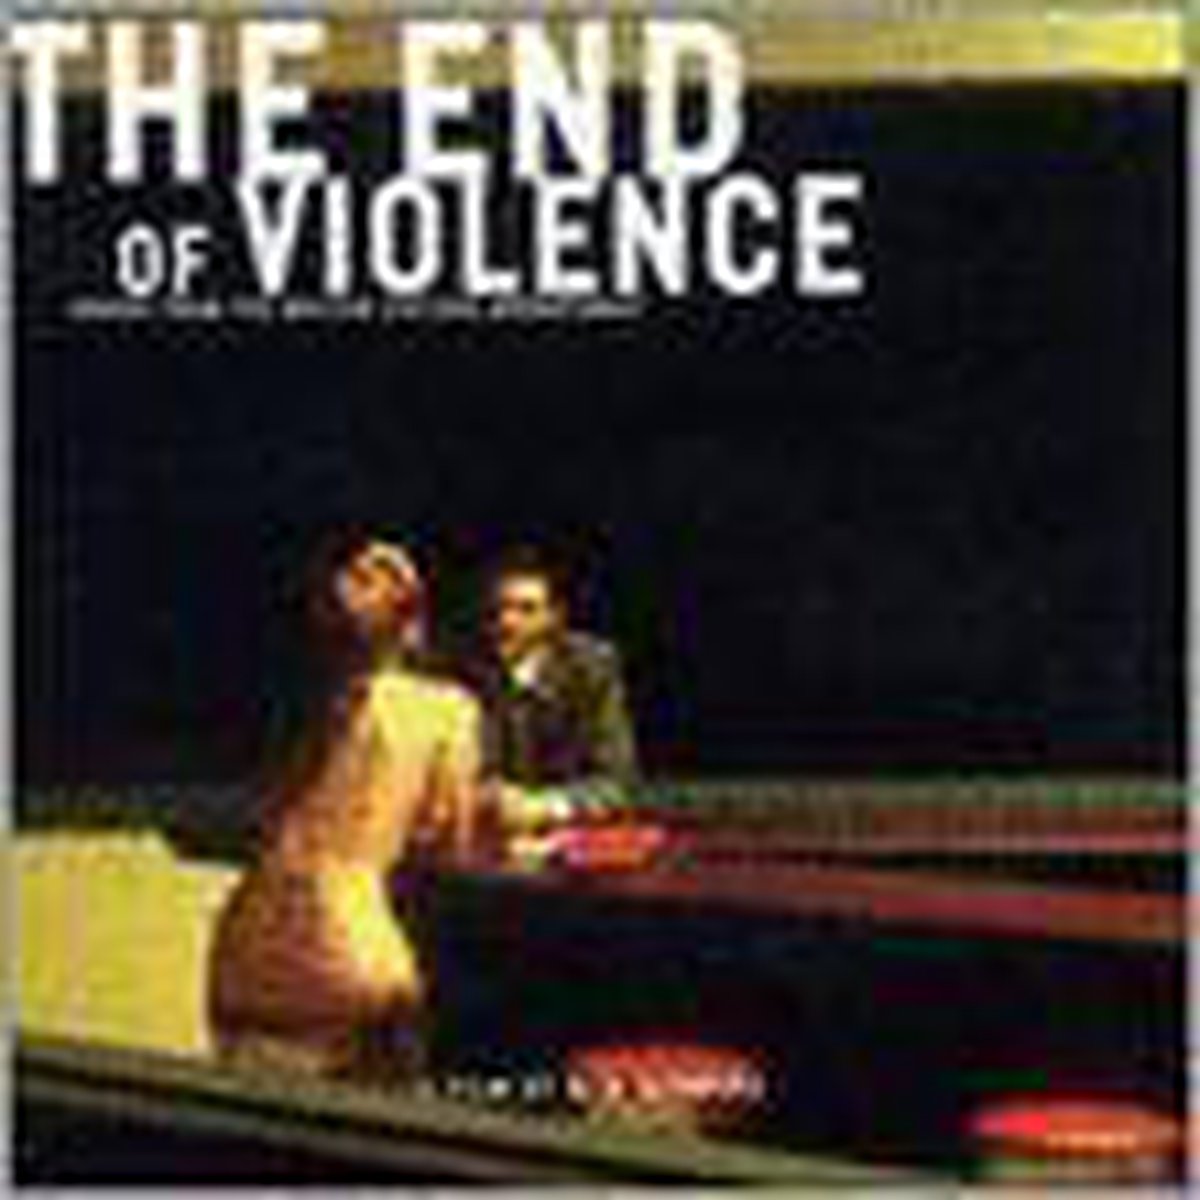 End of Violence - Original Soundtrack